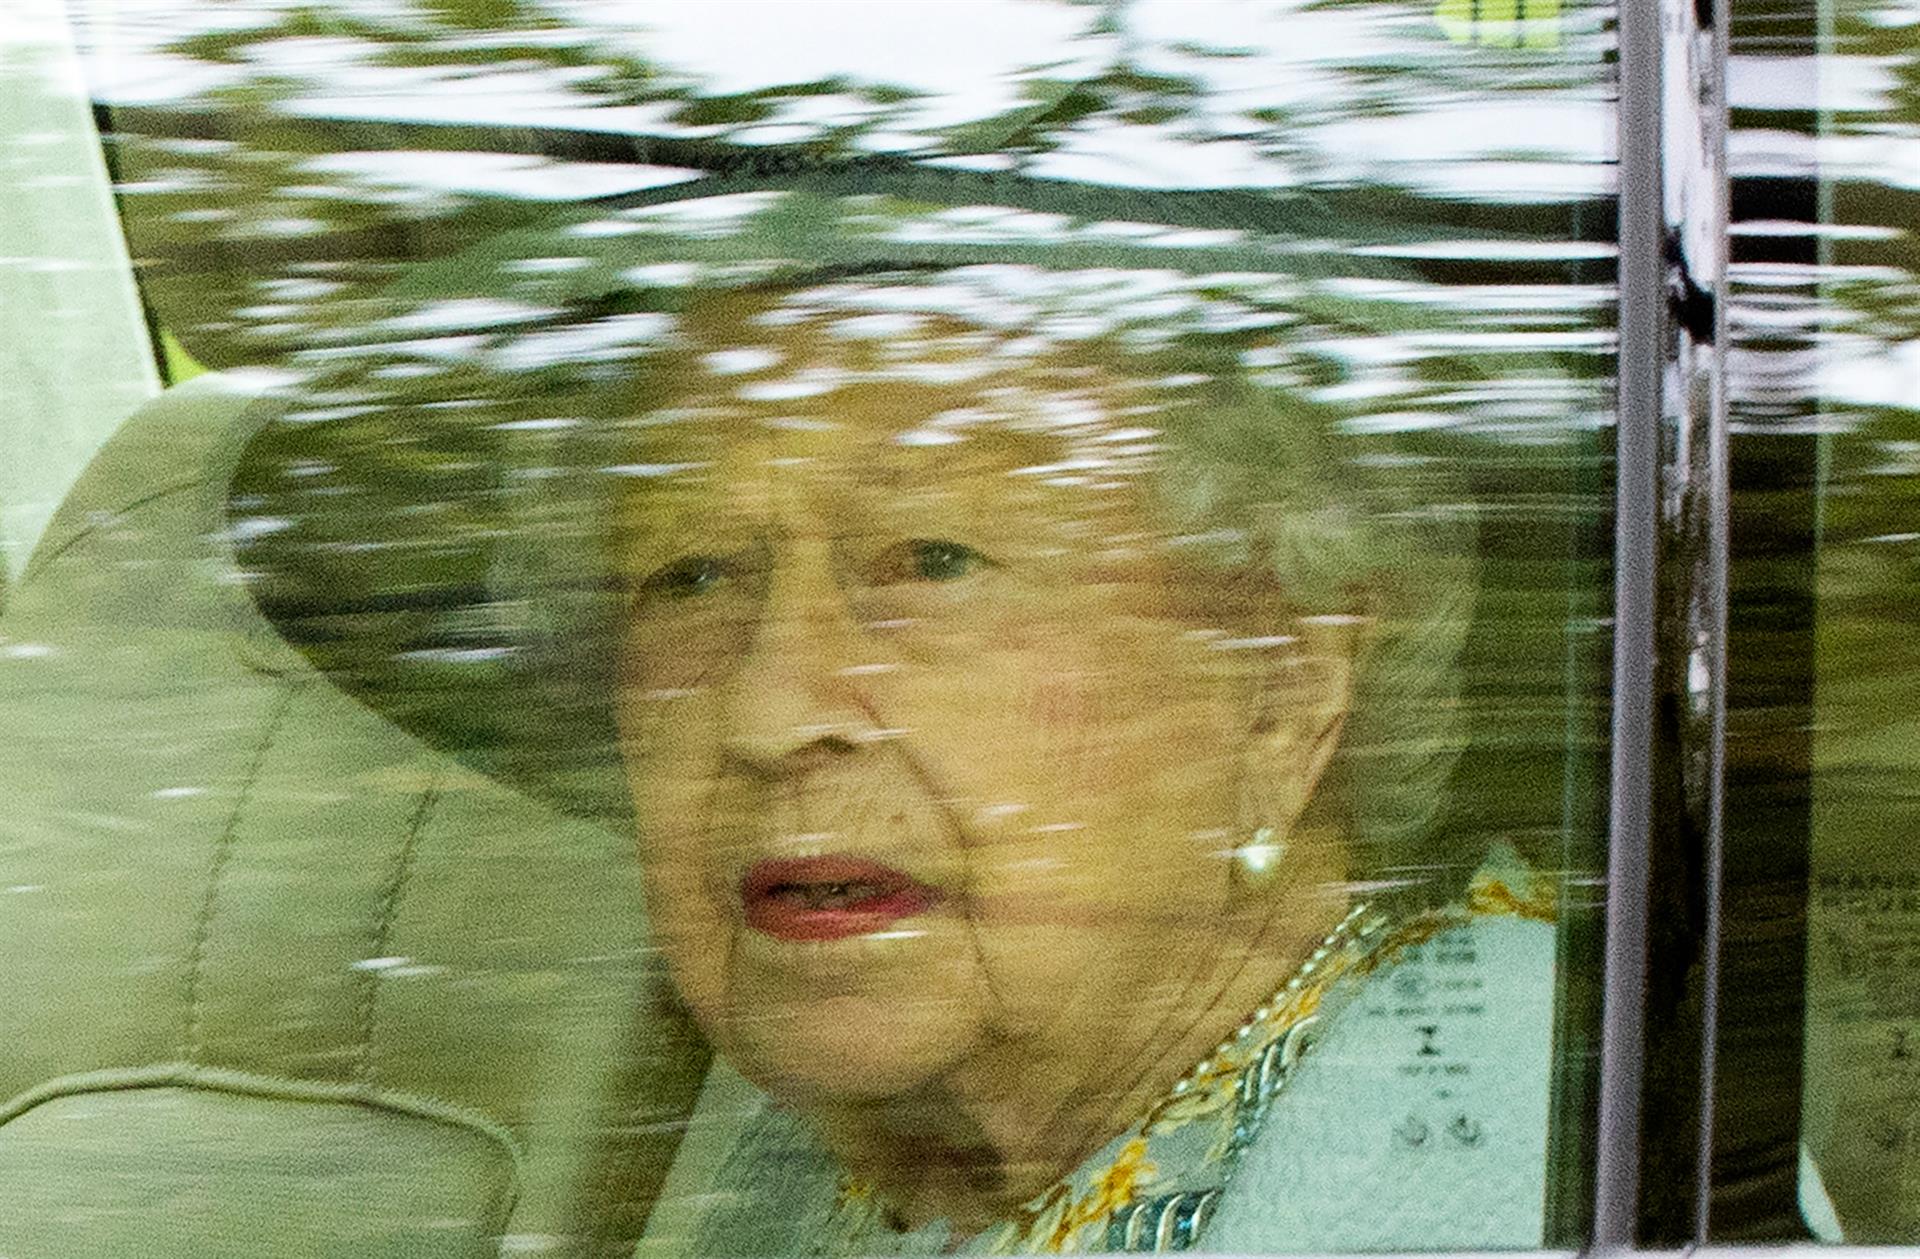 La reina Isabel II sigue retomando sus compromisos con una audiencia virtual en Windsor